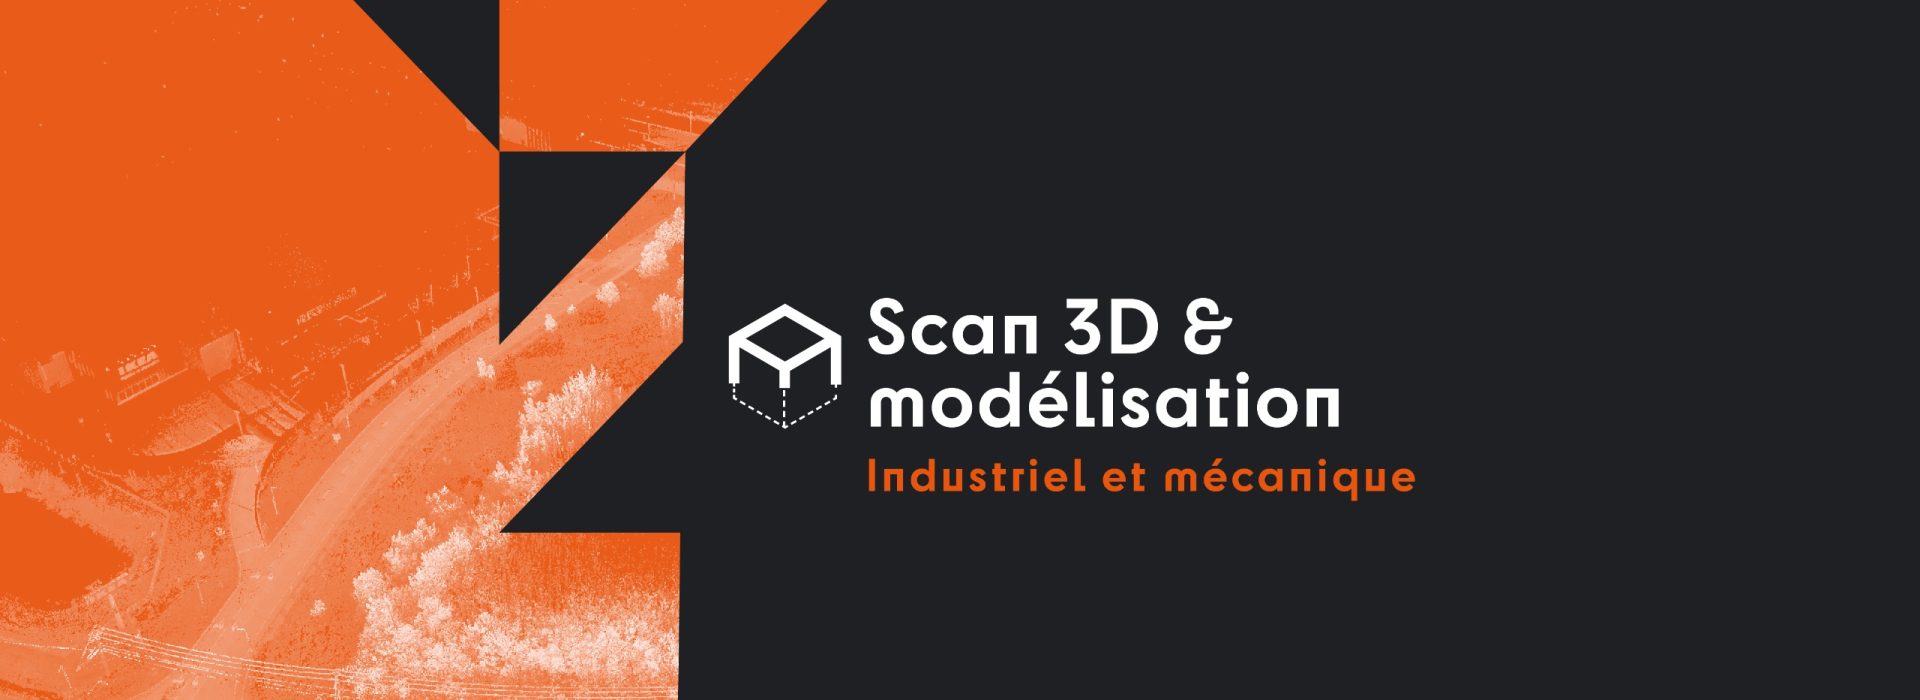 Scan 3D & modélisation - Industriel et mécanique